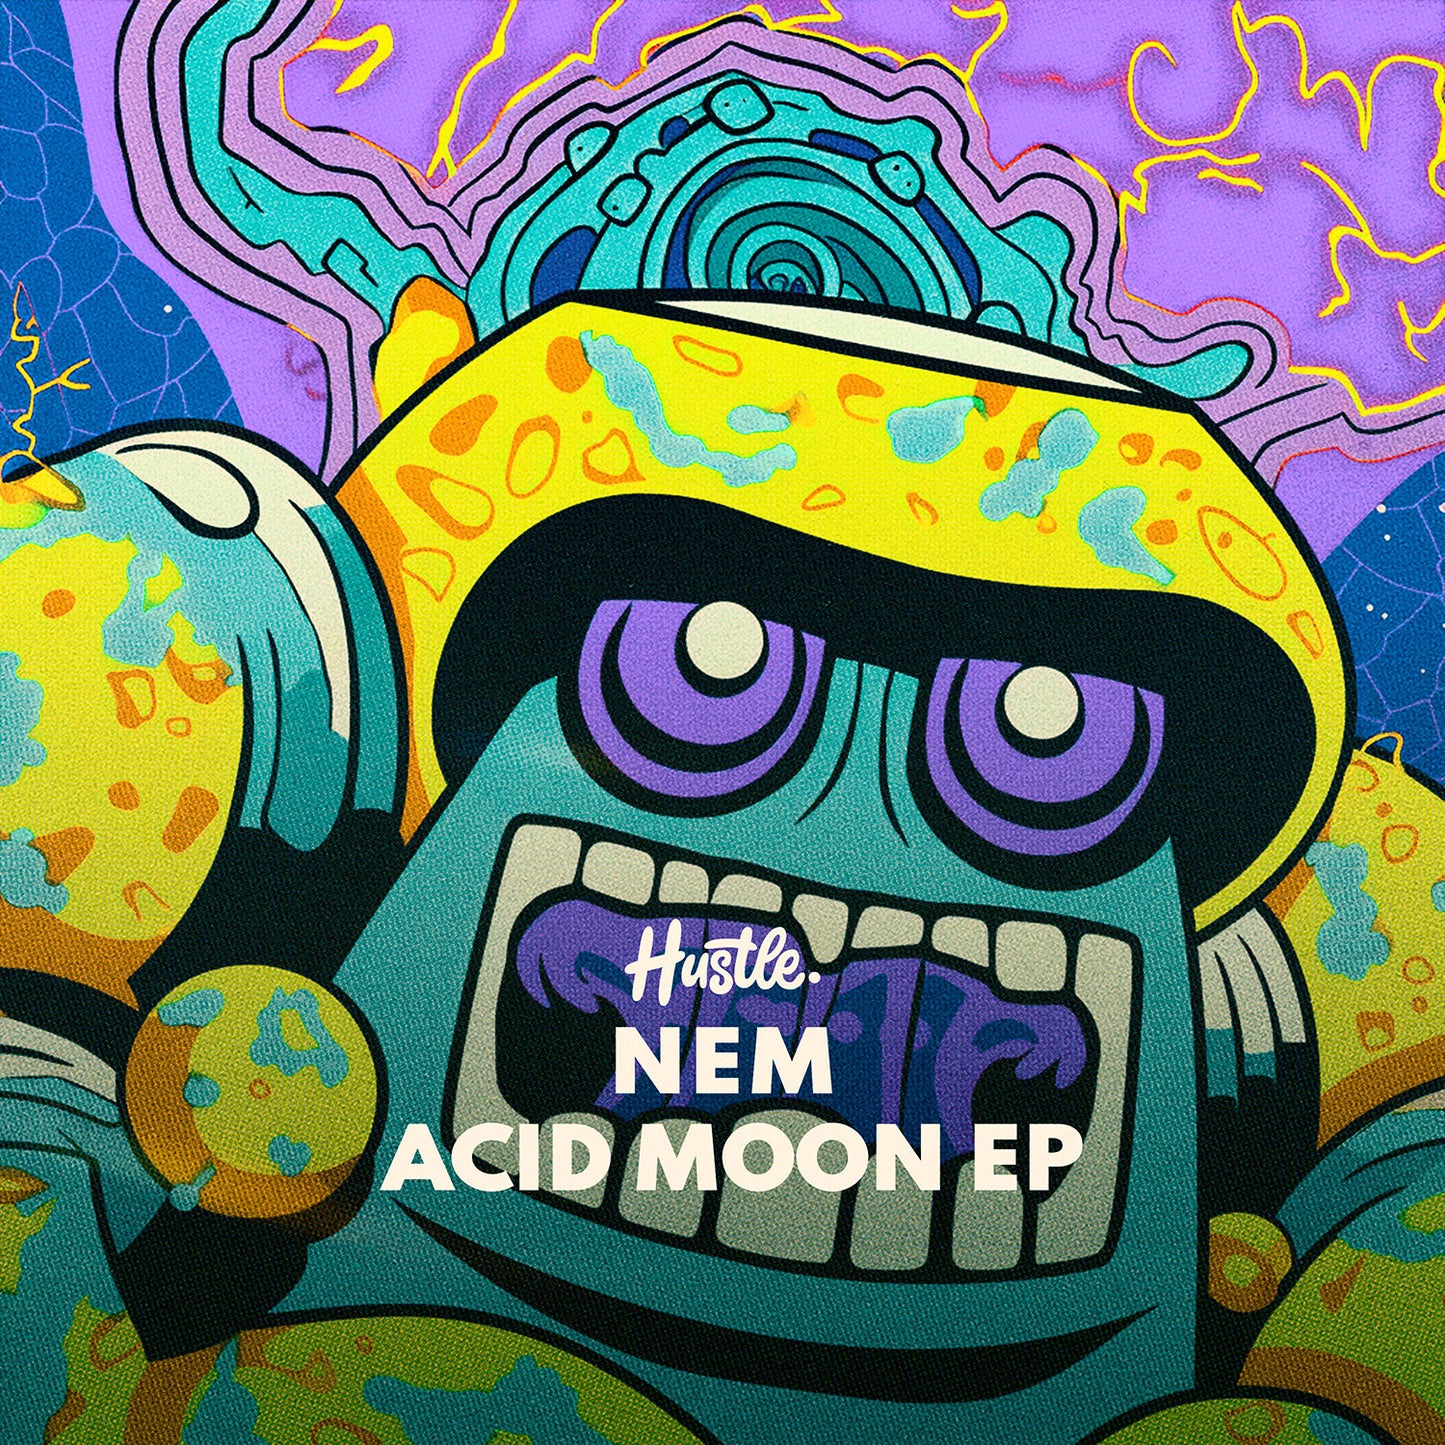 Nem - Acid Moon EP